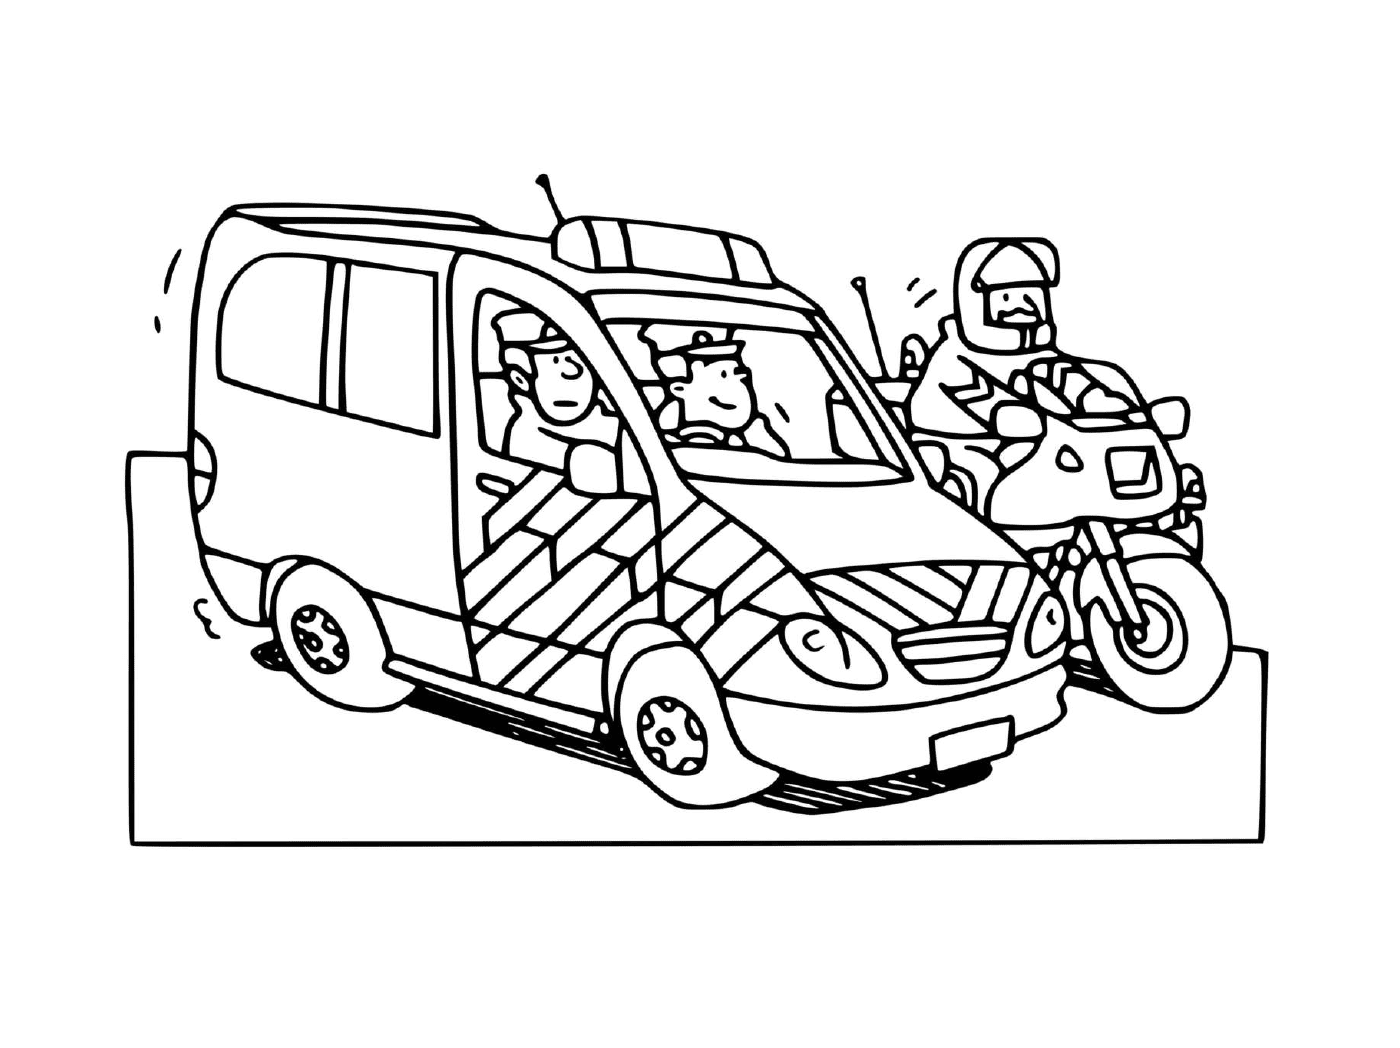  Carro de polícia francês com motocicleta 